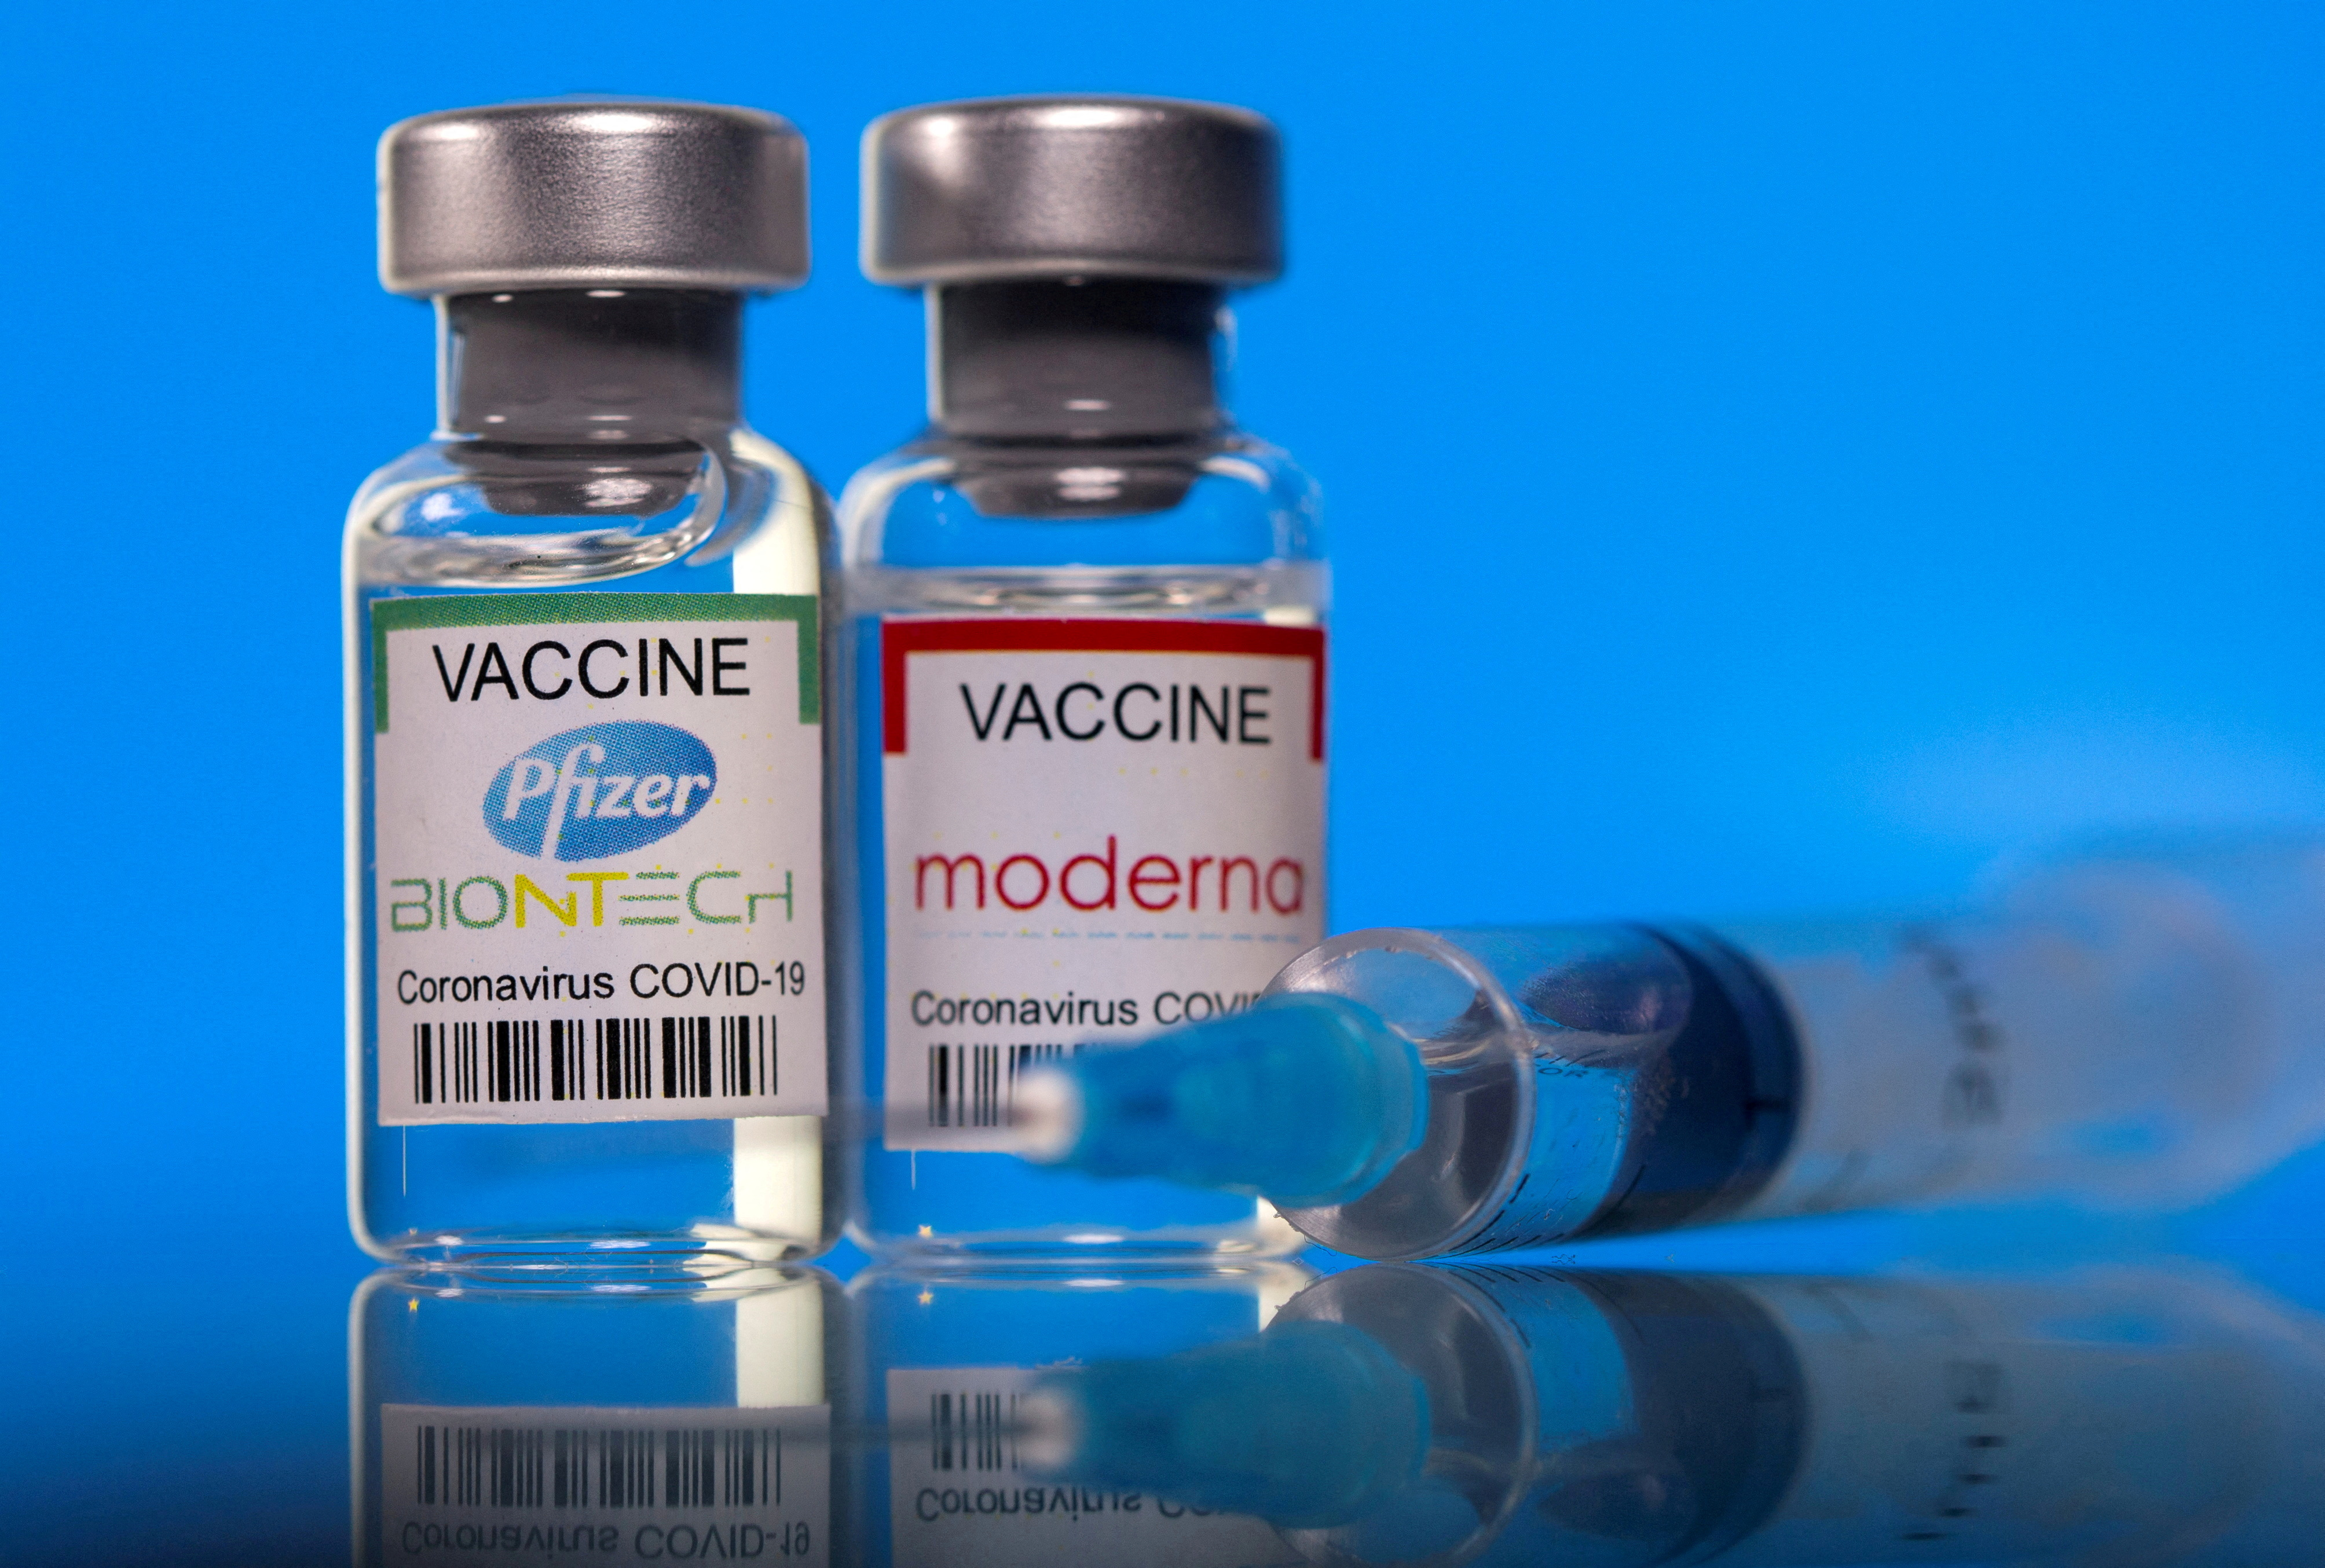 Las vacunas son las grandes herramientas para vencer la pandemia (REUTERS/Dado Ruvic/Illustration/File Photo)